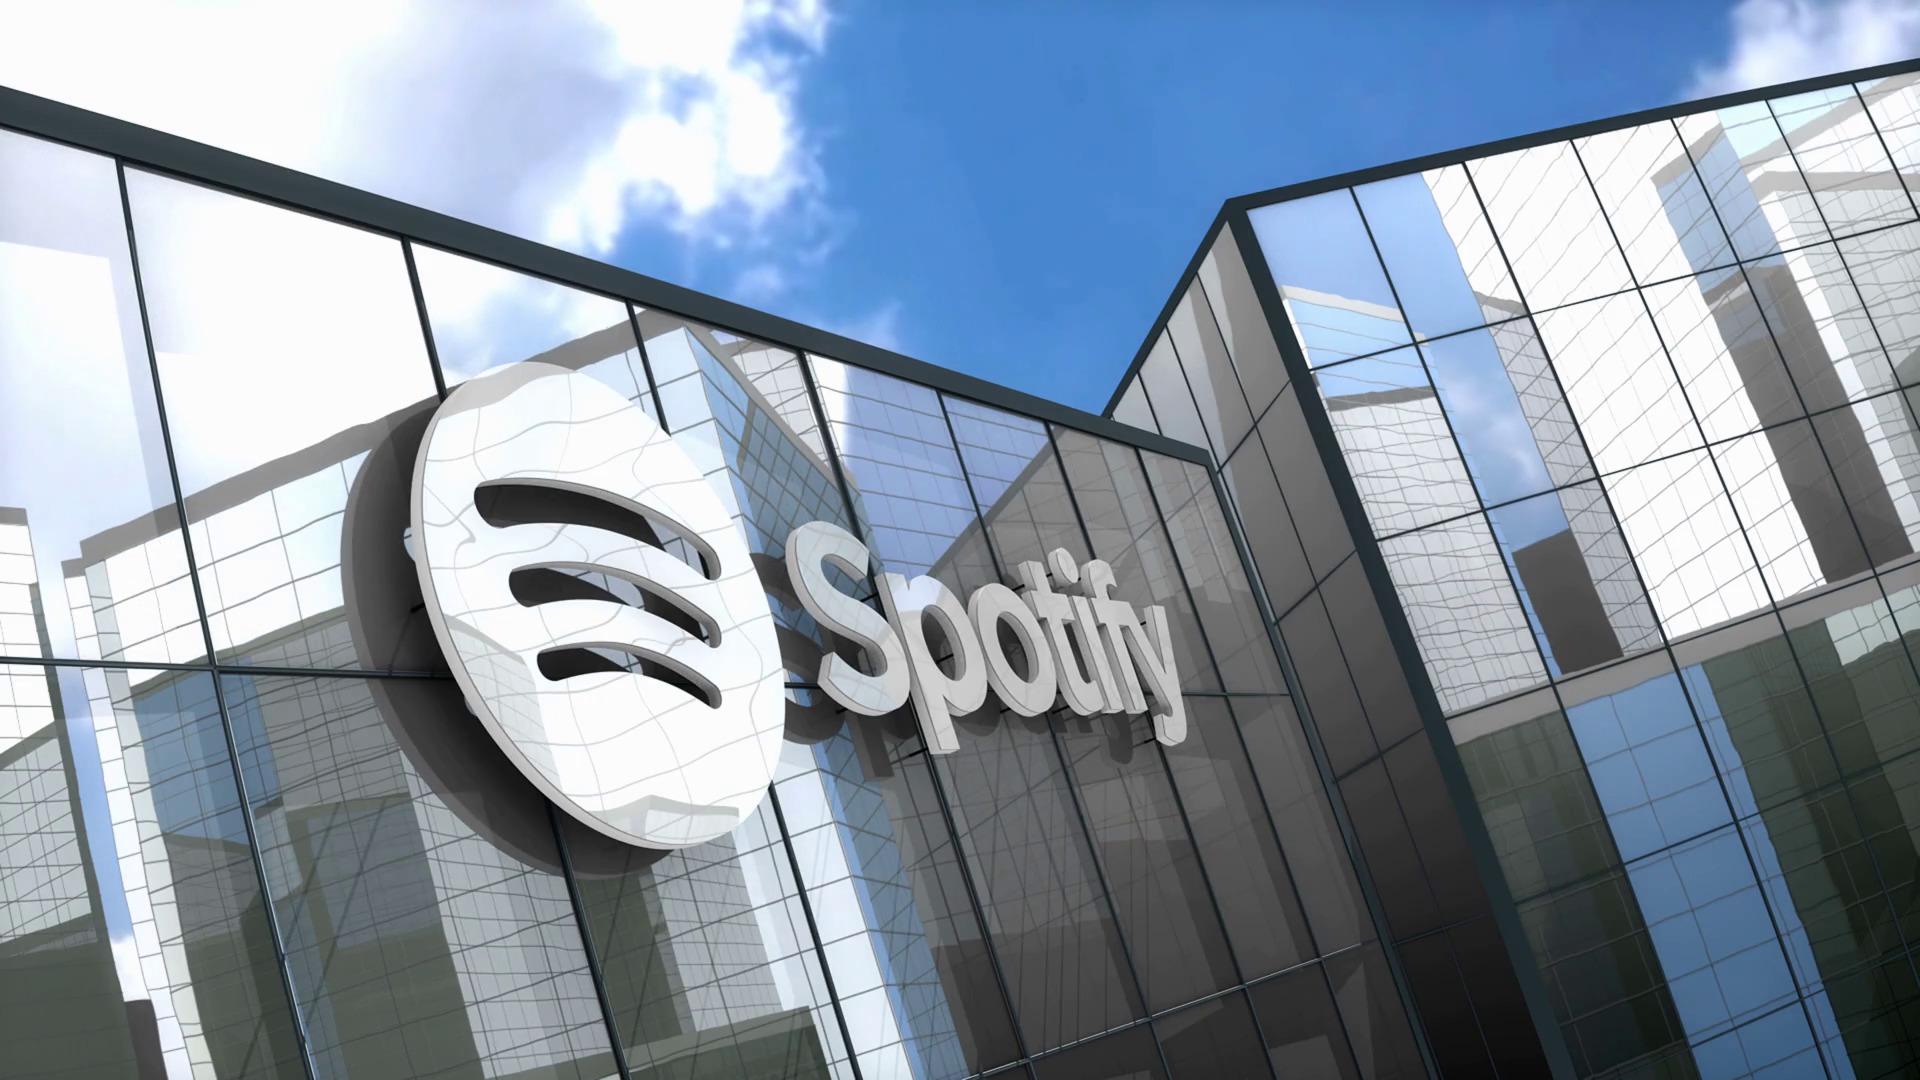 Spotify domina ancora il mercato degli abbonamenti musicali, ma la sua quota di mercato è diminuita